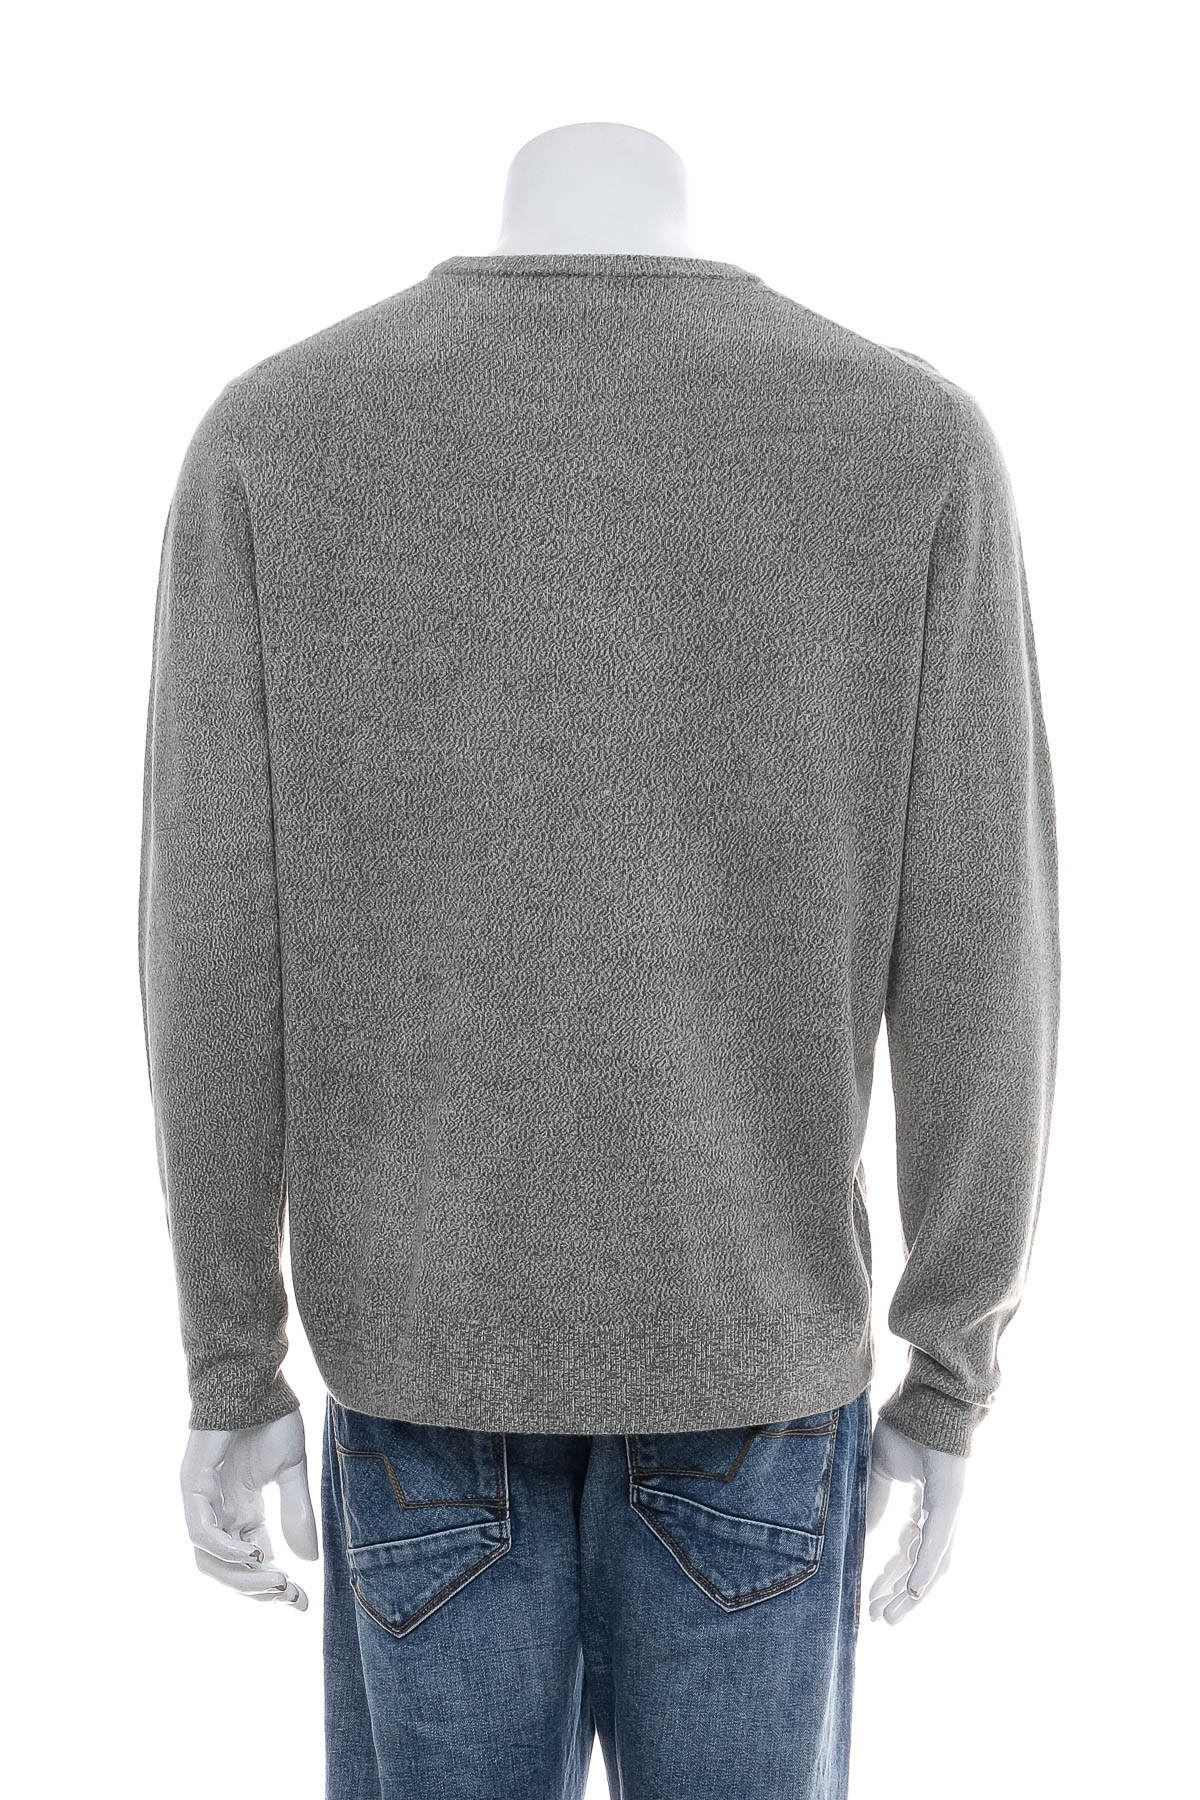 Men's sweater - DOCKERS - 1